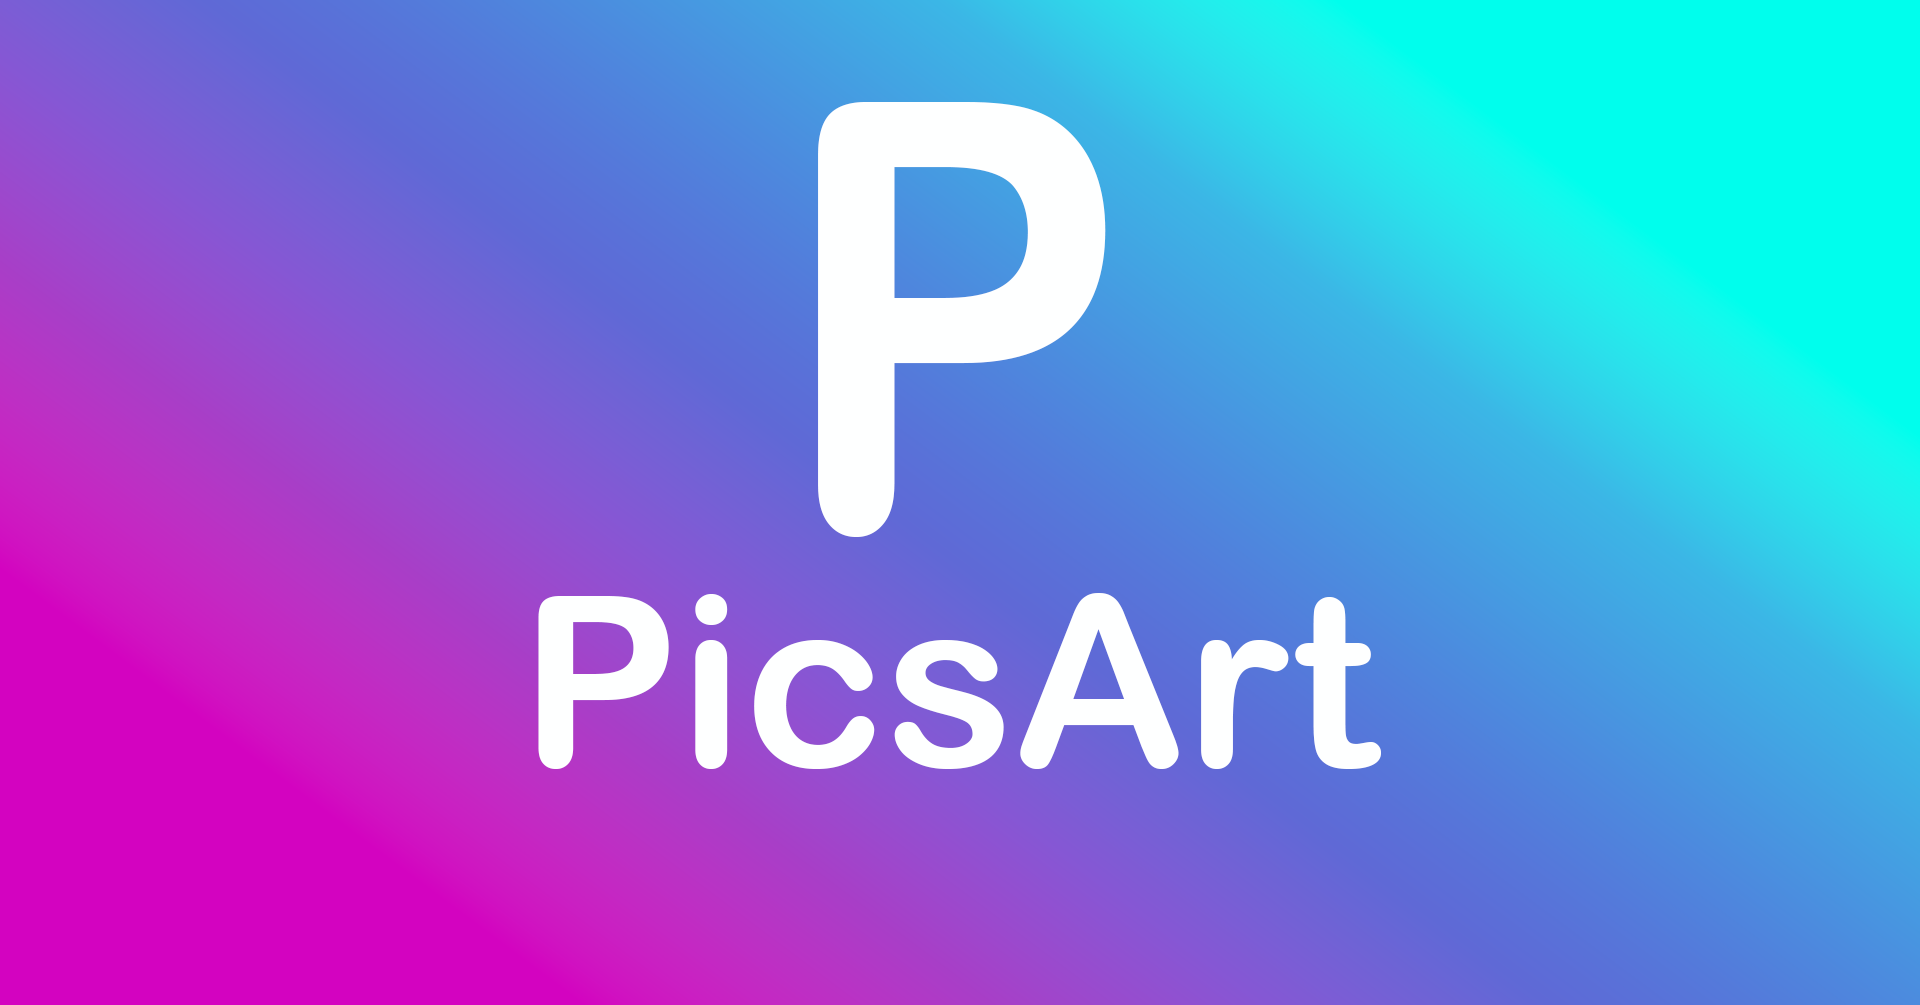 بهترین برنامه ادیت حرفه ای روی عکس برای اندروید PicsArt